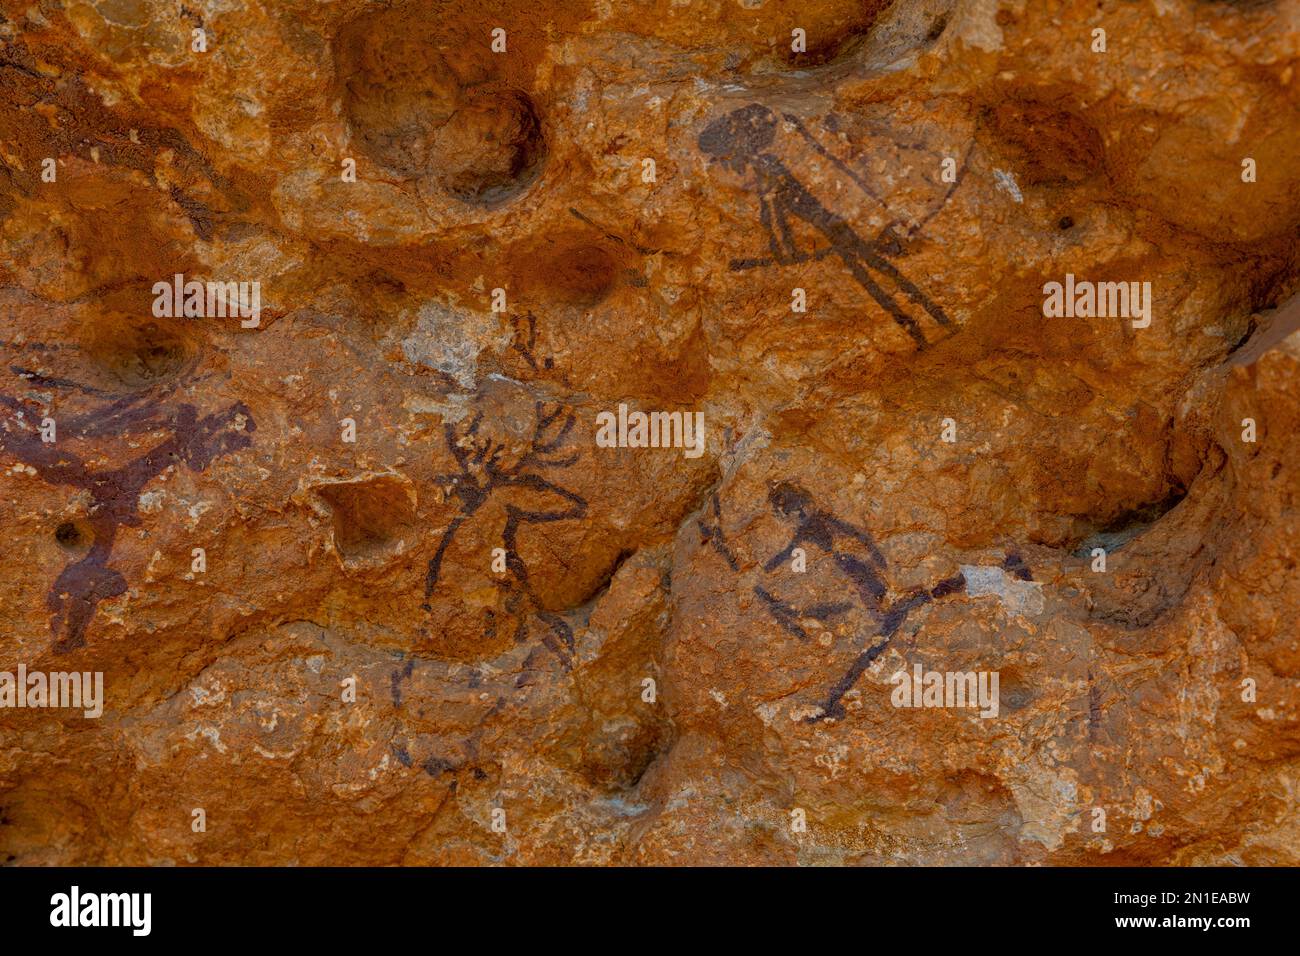 Arte rupestre de la cuenca mediterránea ibérica, Patrimonio de la Humanidad de la UNESCO, Ulldecona, Cataluña, España, Europa Foto de stock